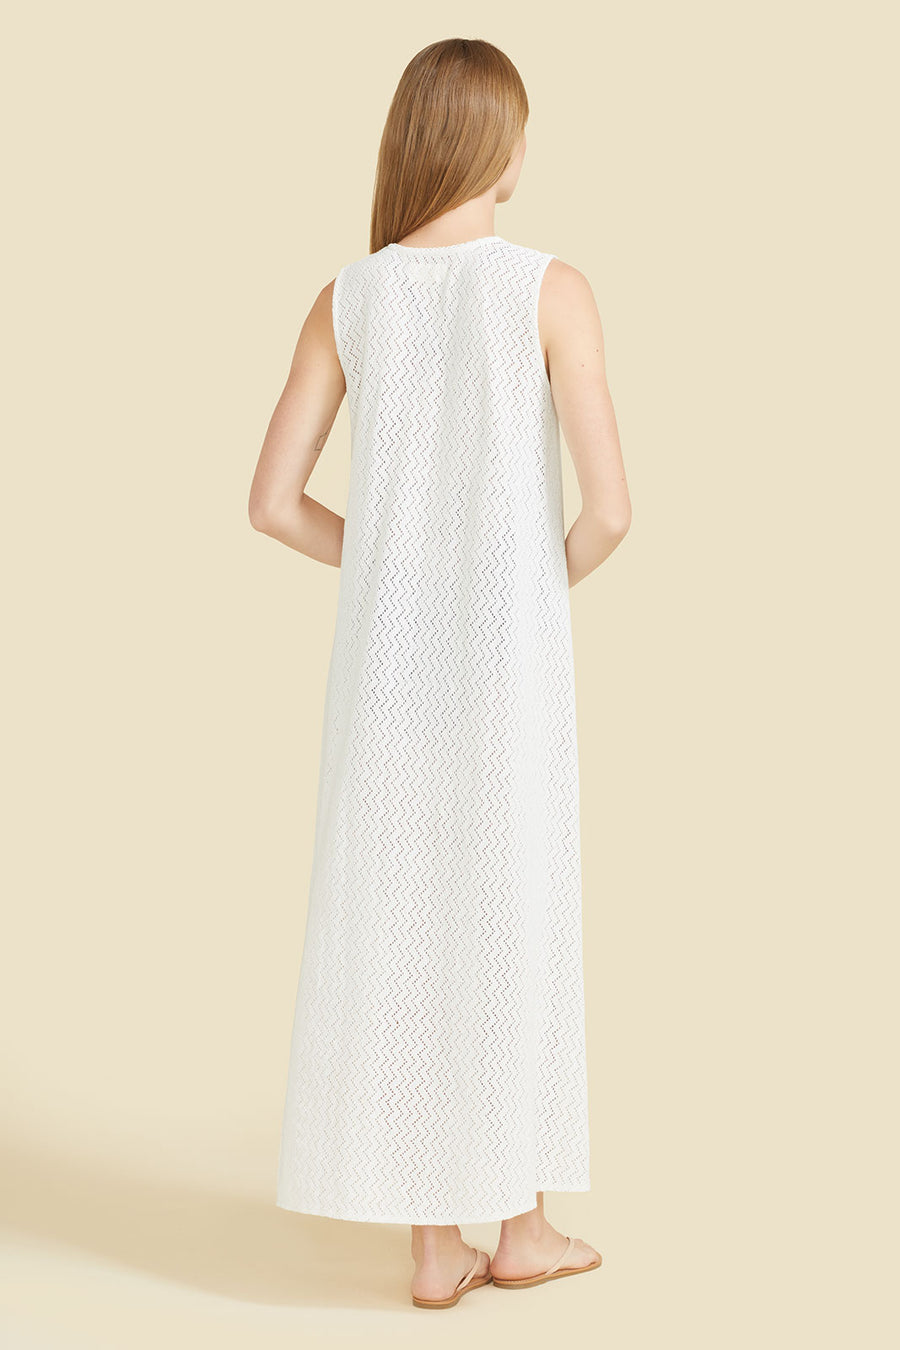 Sorrento Dress - White Crochet (Pre-order)